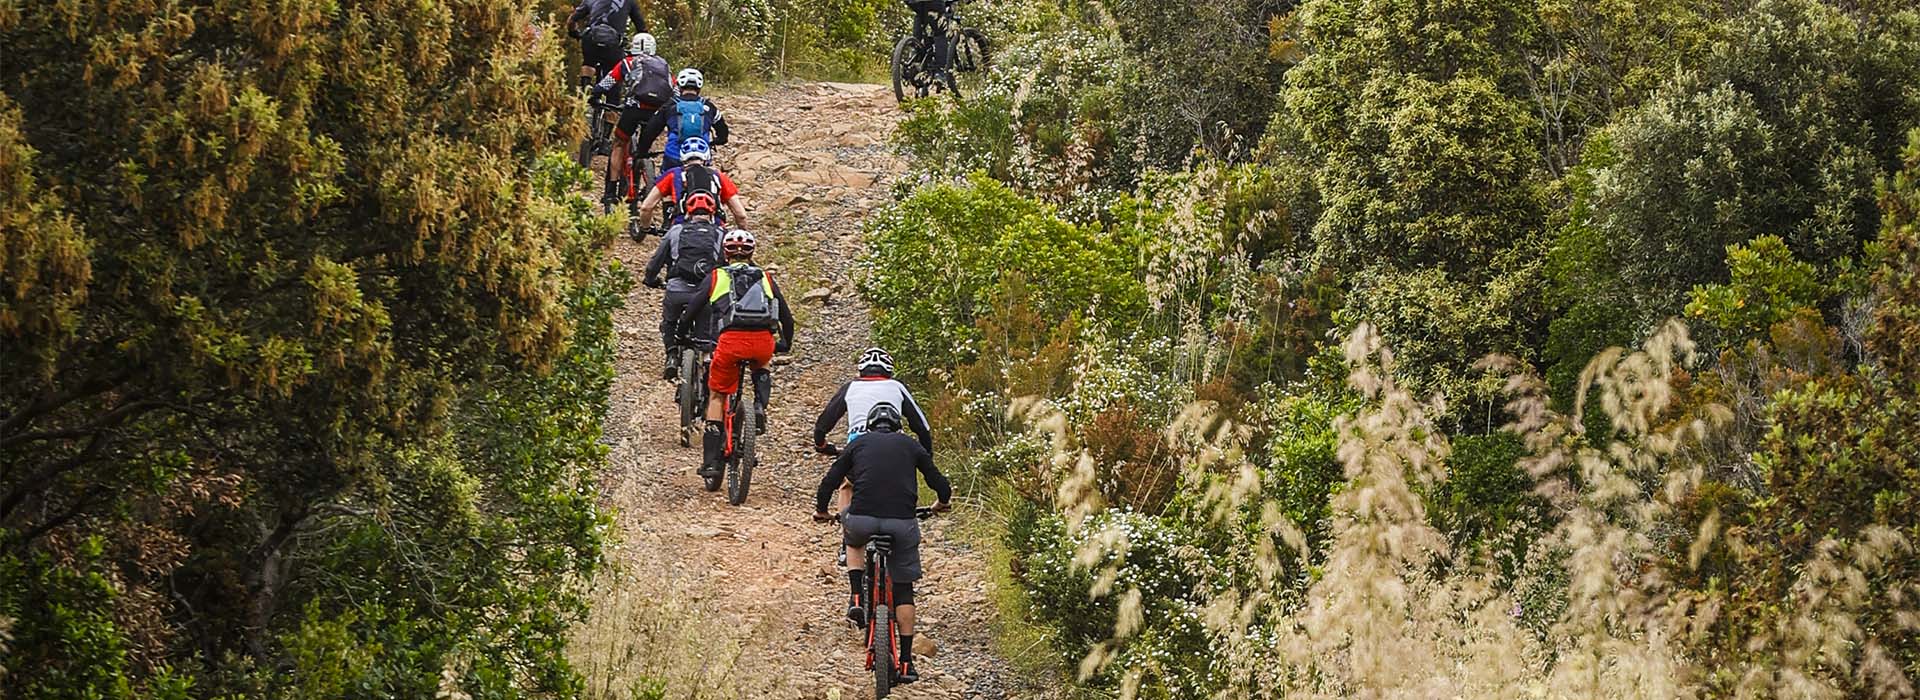 Thok Event - Raduno “Berici Hills” powered by THOK-Il Ciclista – Montecchio Maggiore (VI)